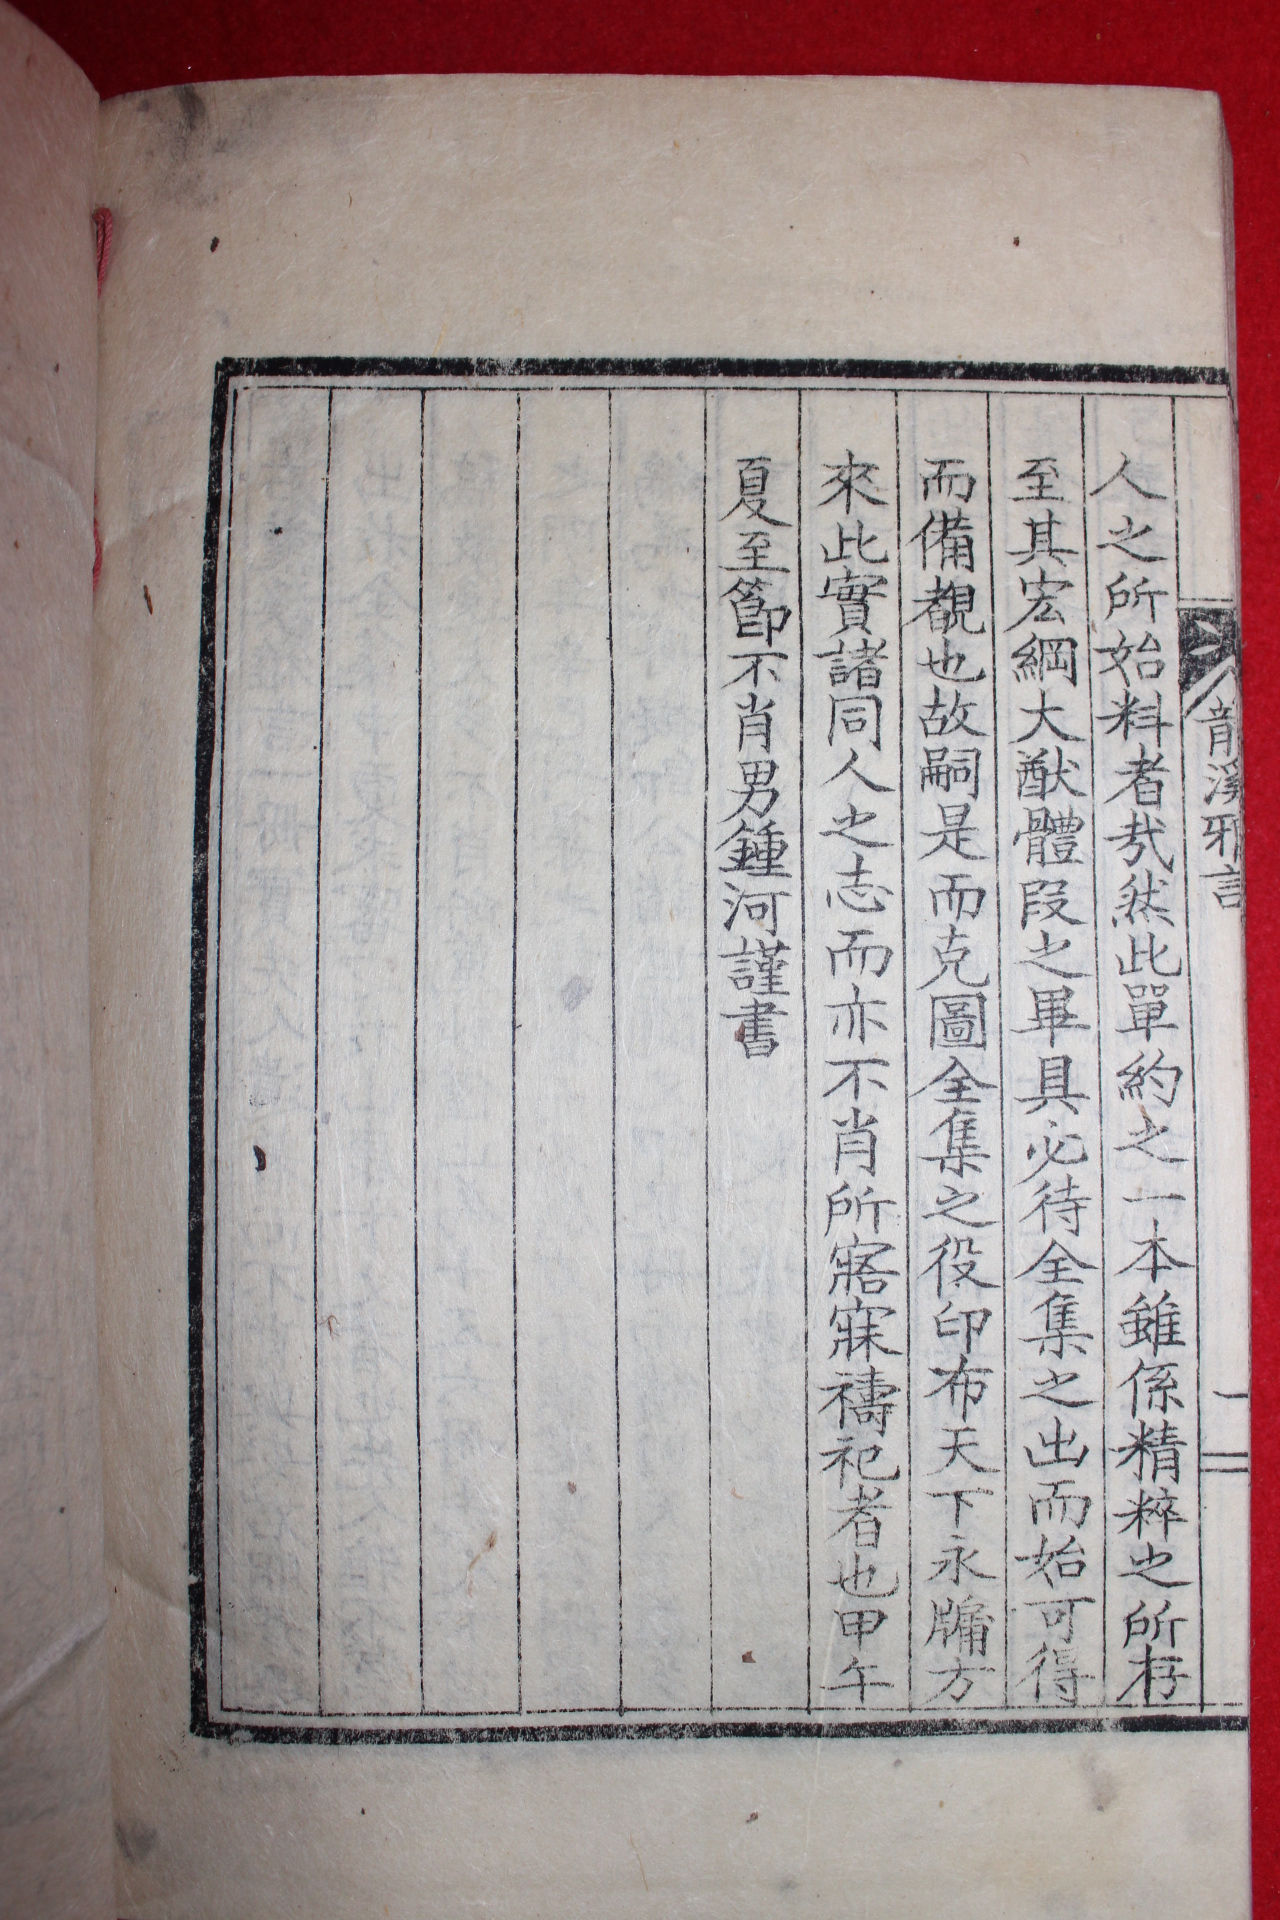 1942년 김병린(金柄璘) 용계아언(龍溪雅言) 1책완질